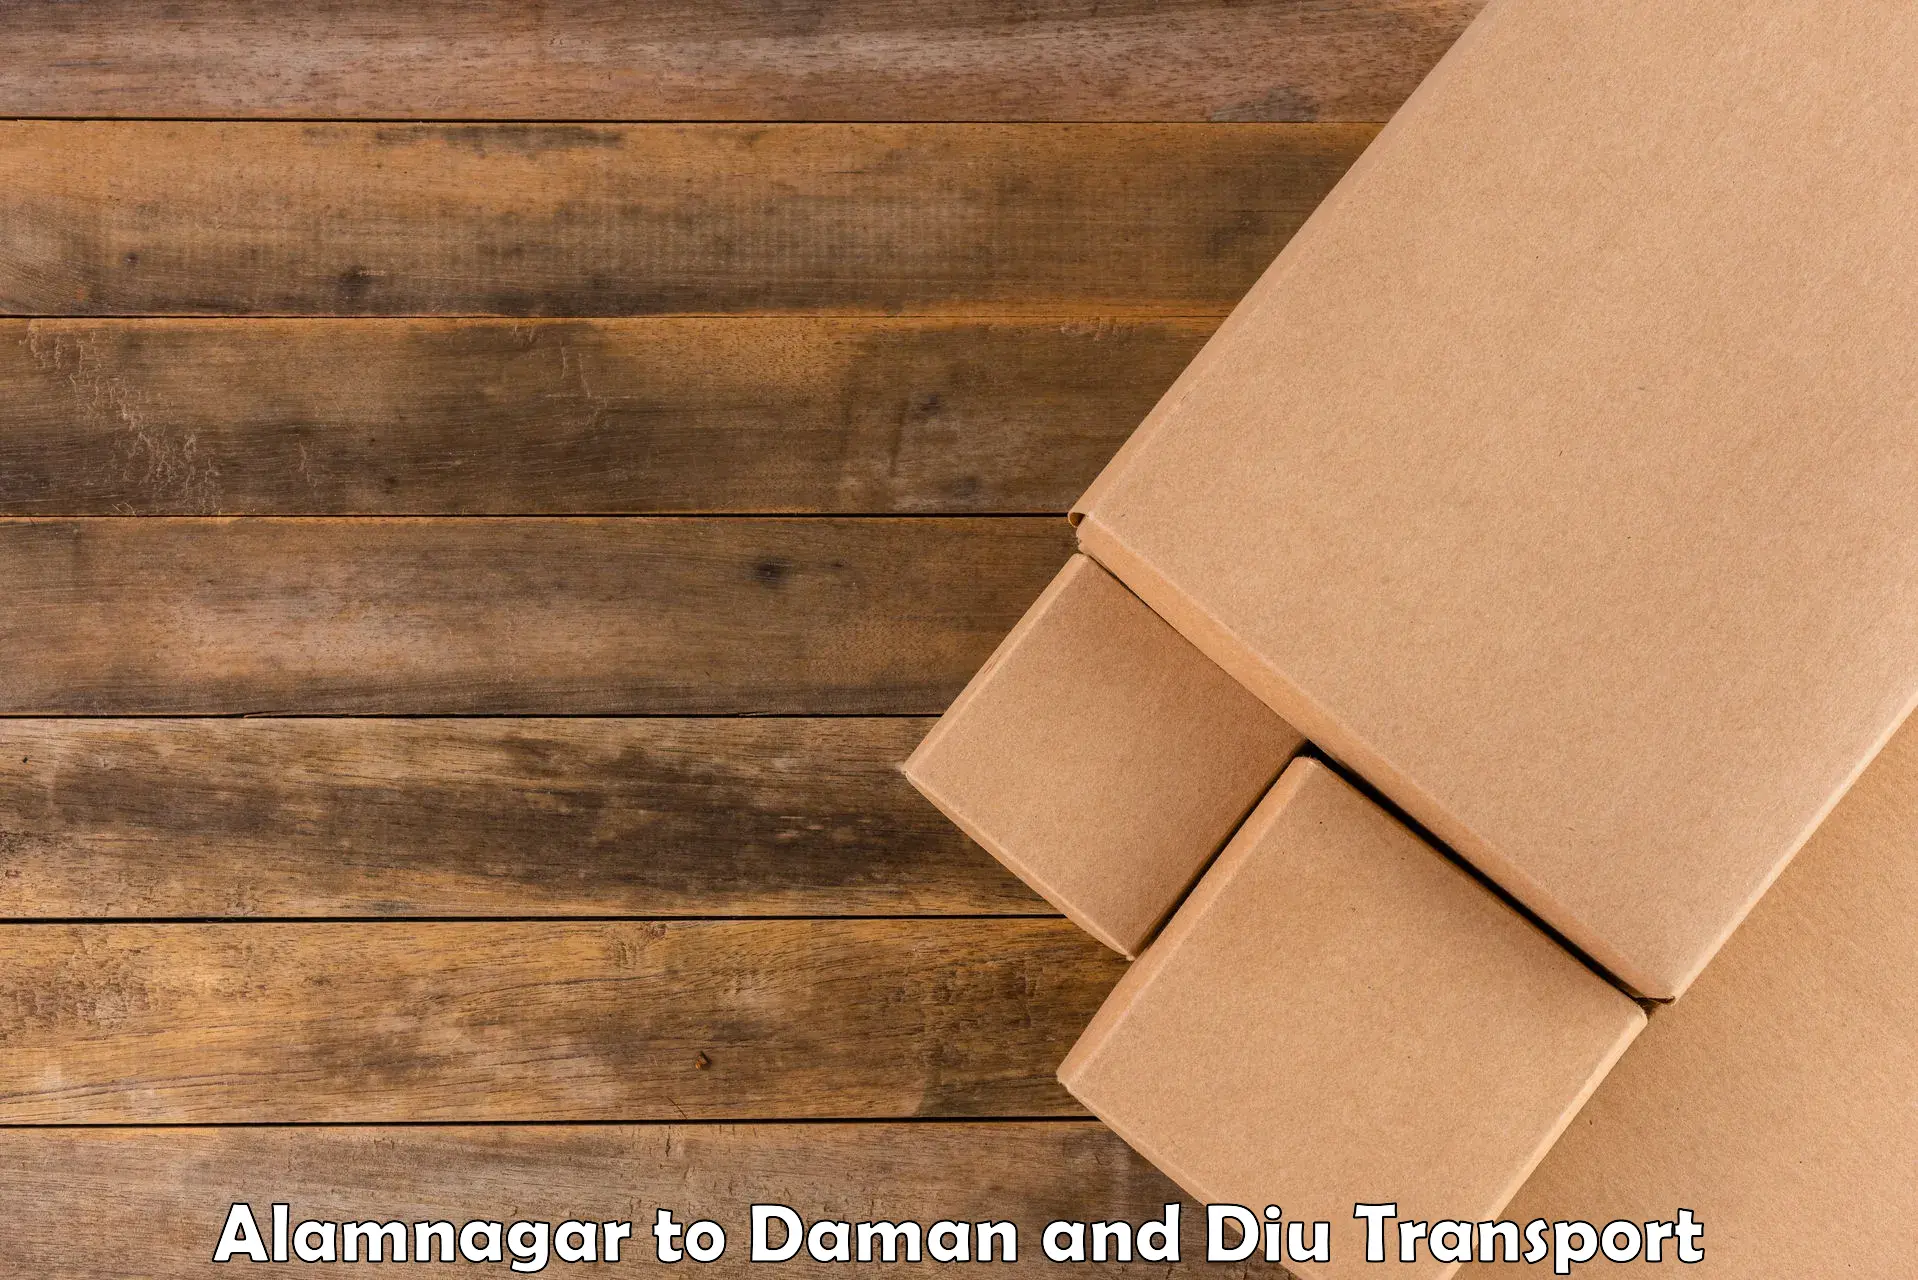 Daily parcel service transport Alamnagar to Daman and Diu